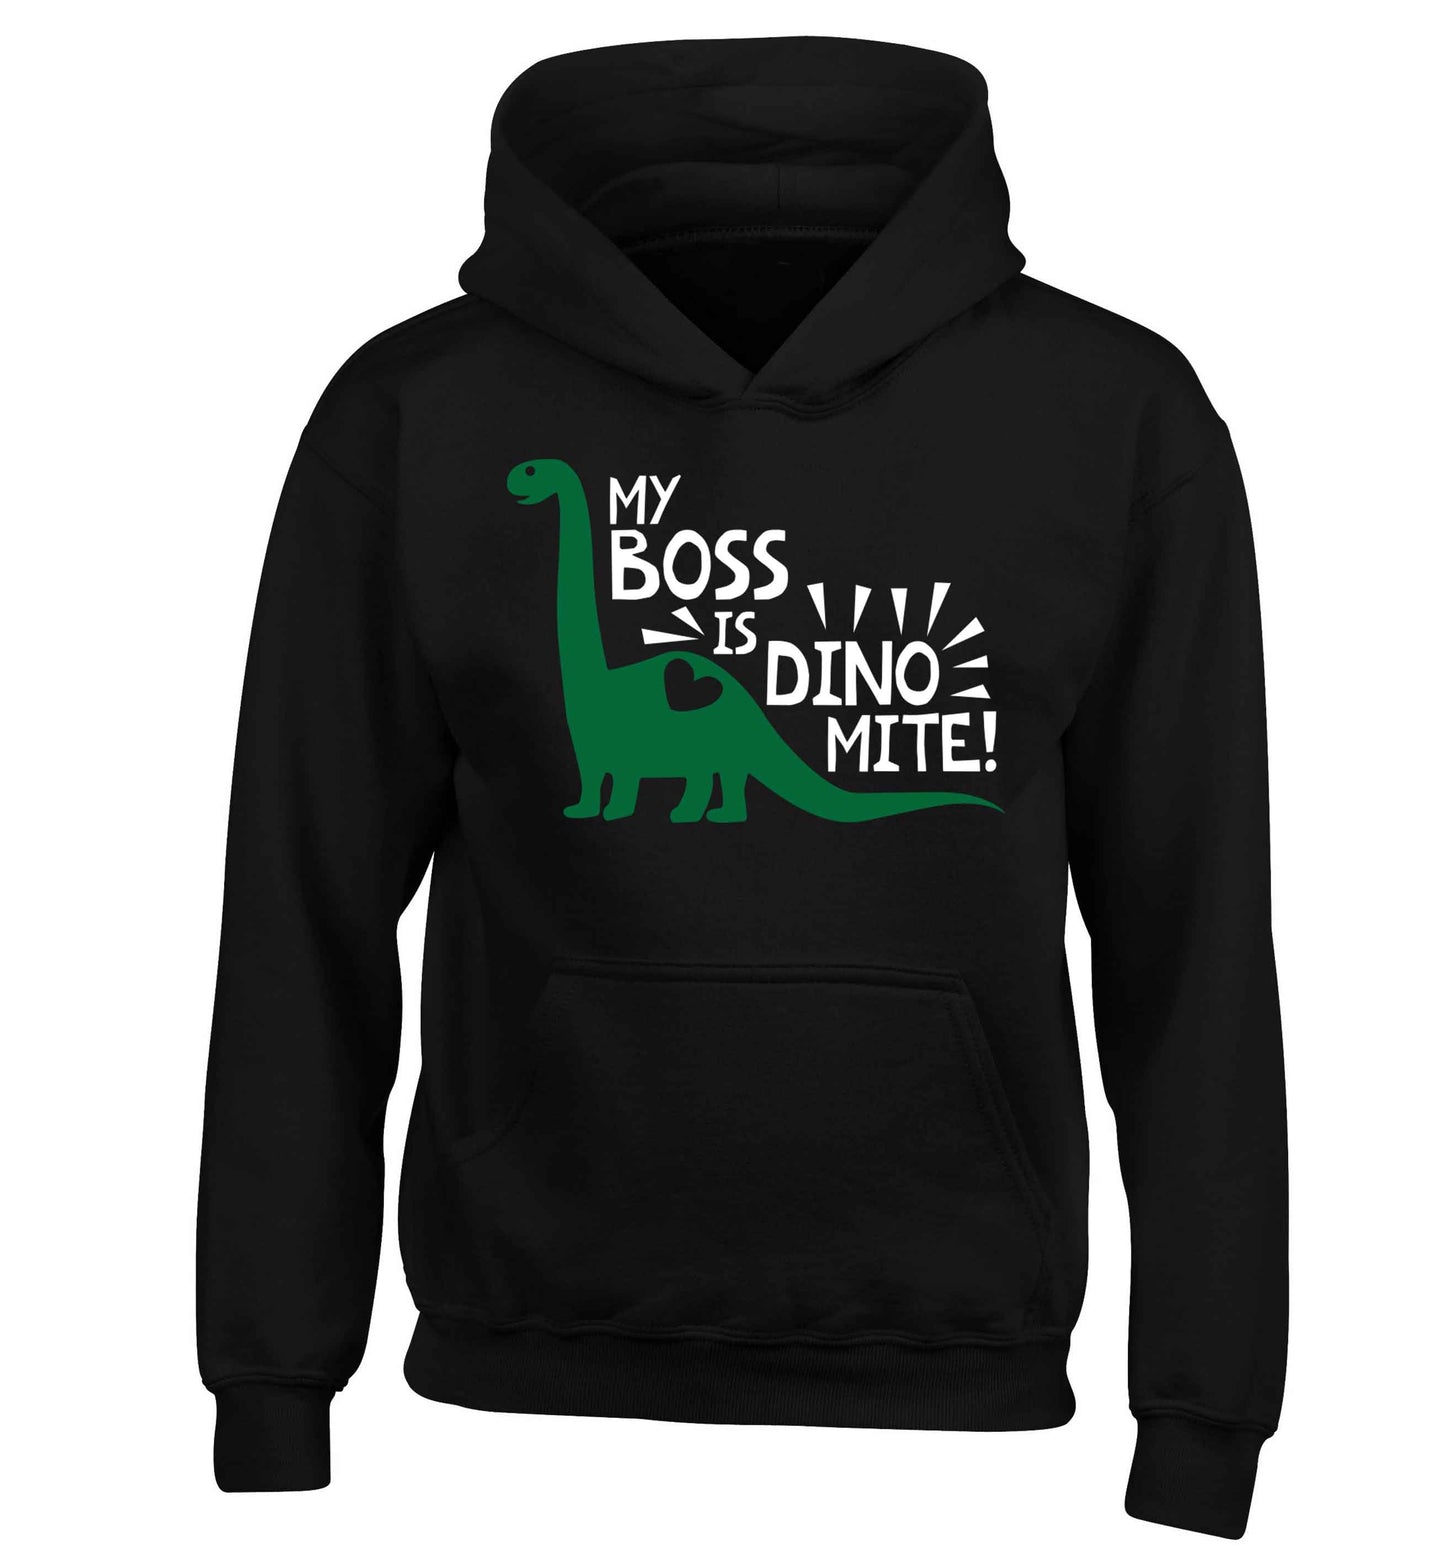 My boss is dinomite! children's black hoodie 12-13 Years